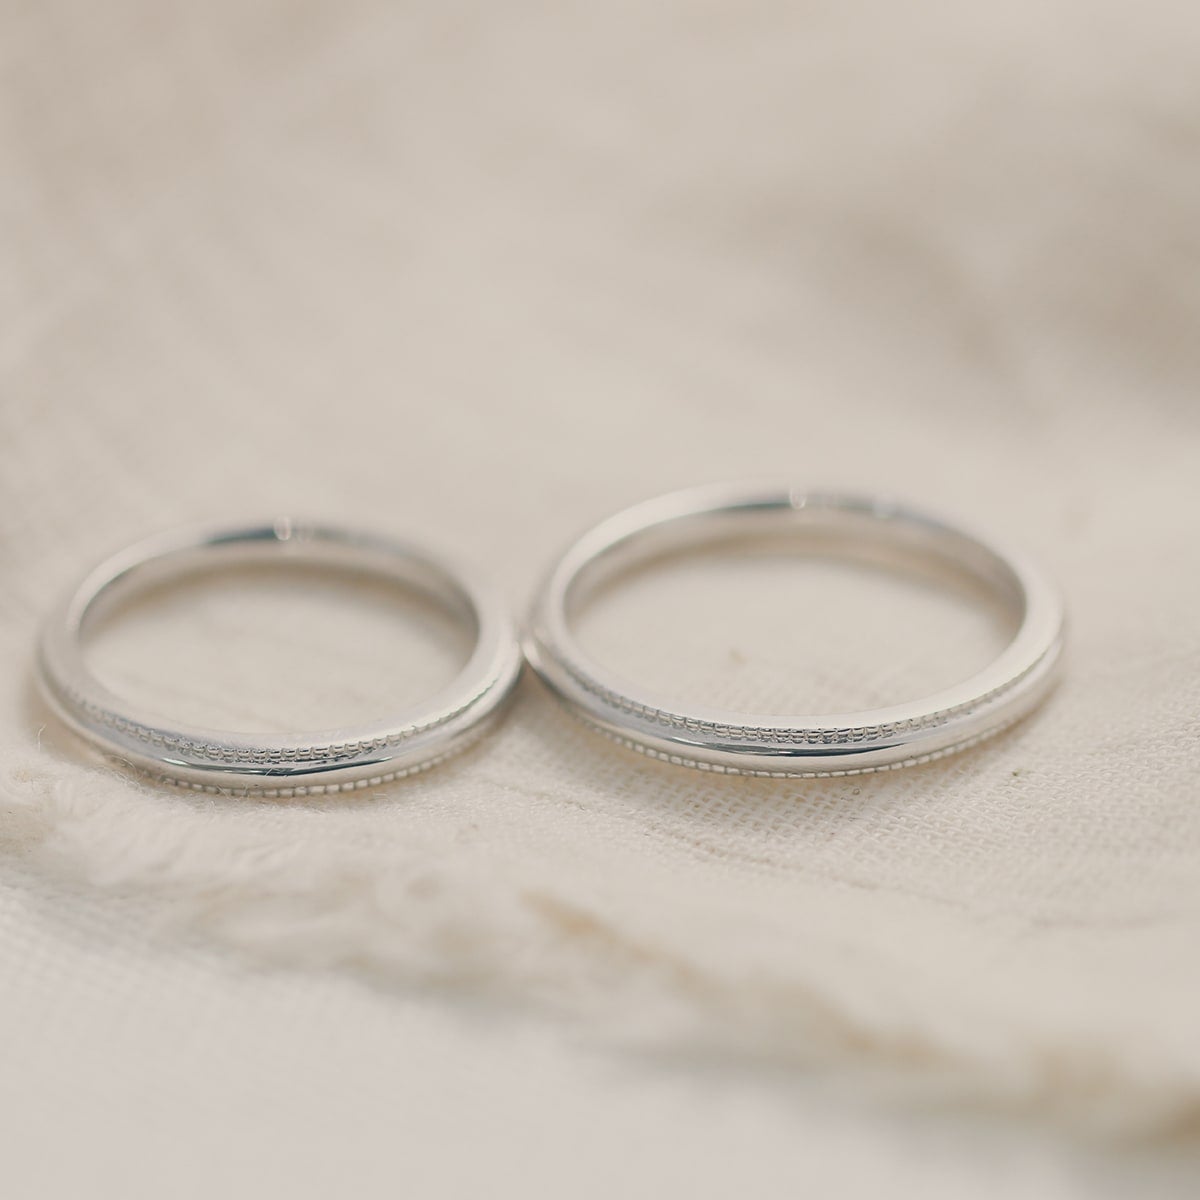 結婚指輪 2本セット | 30036-30036